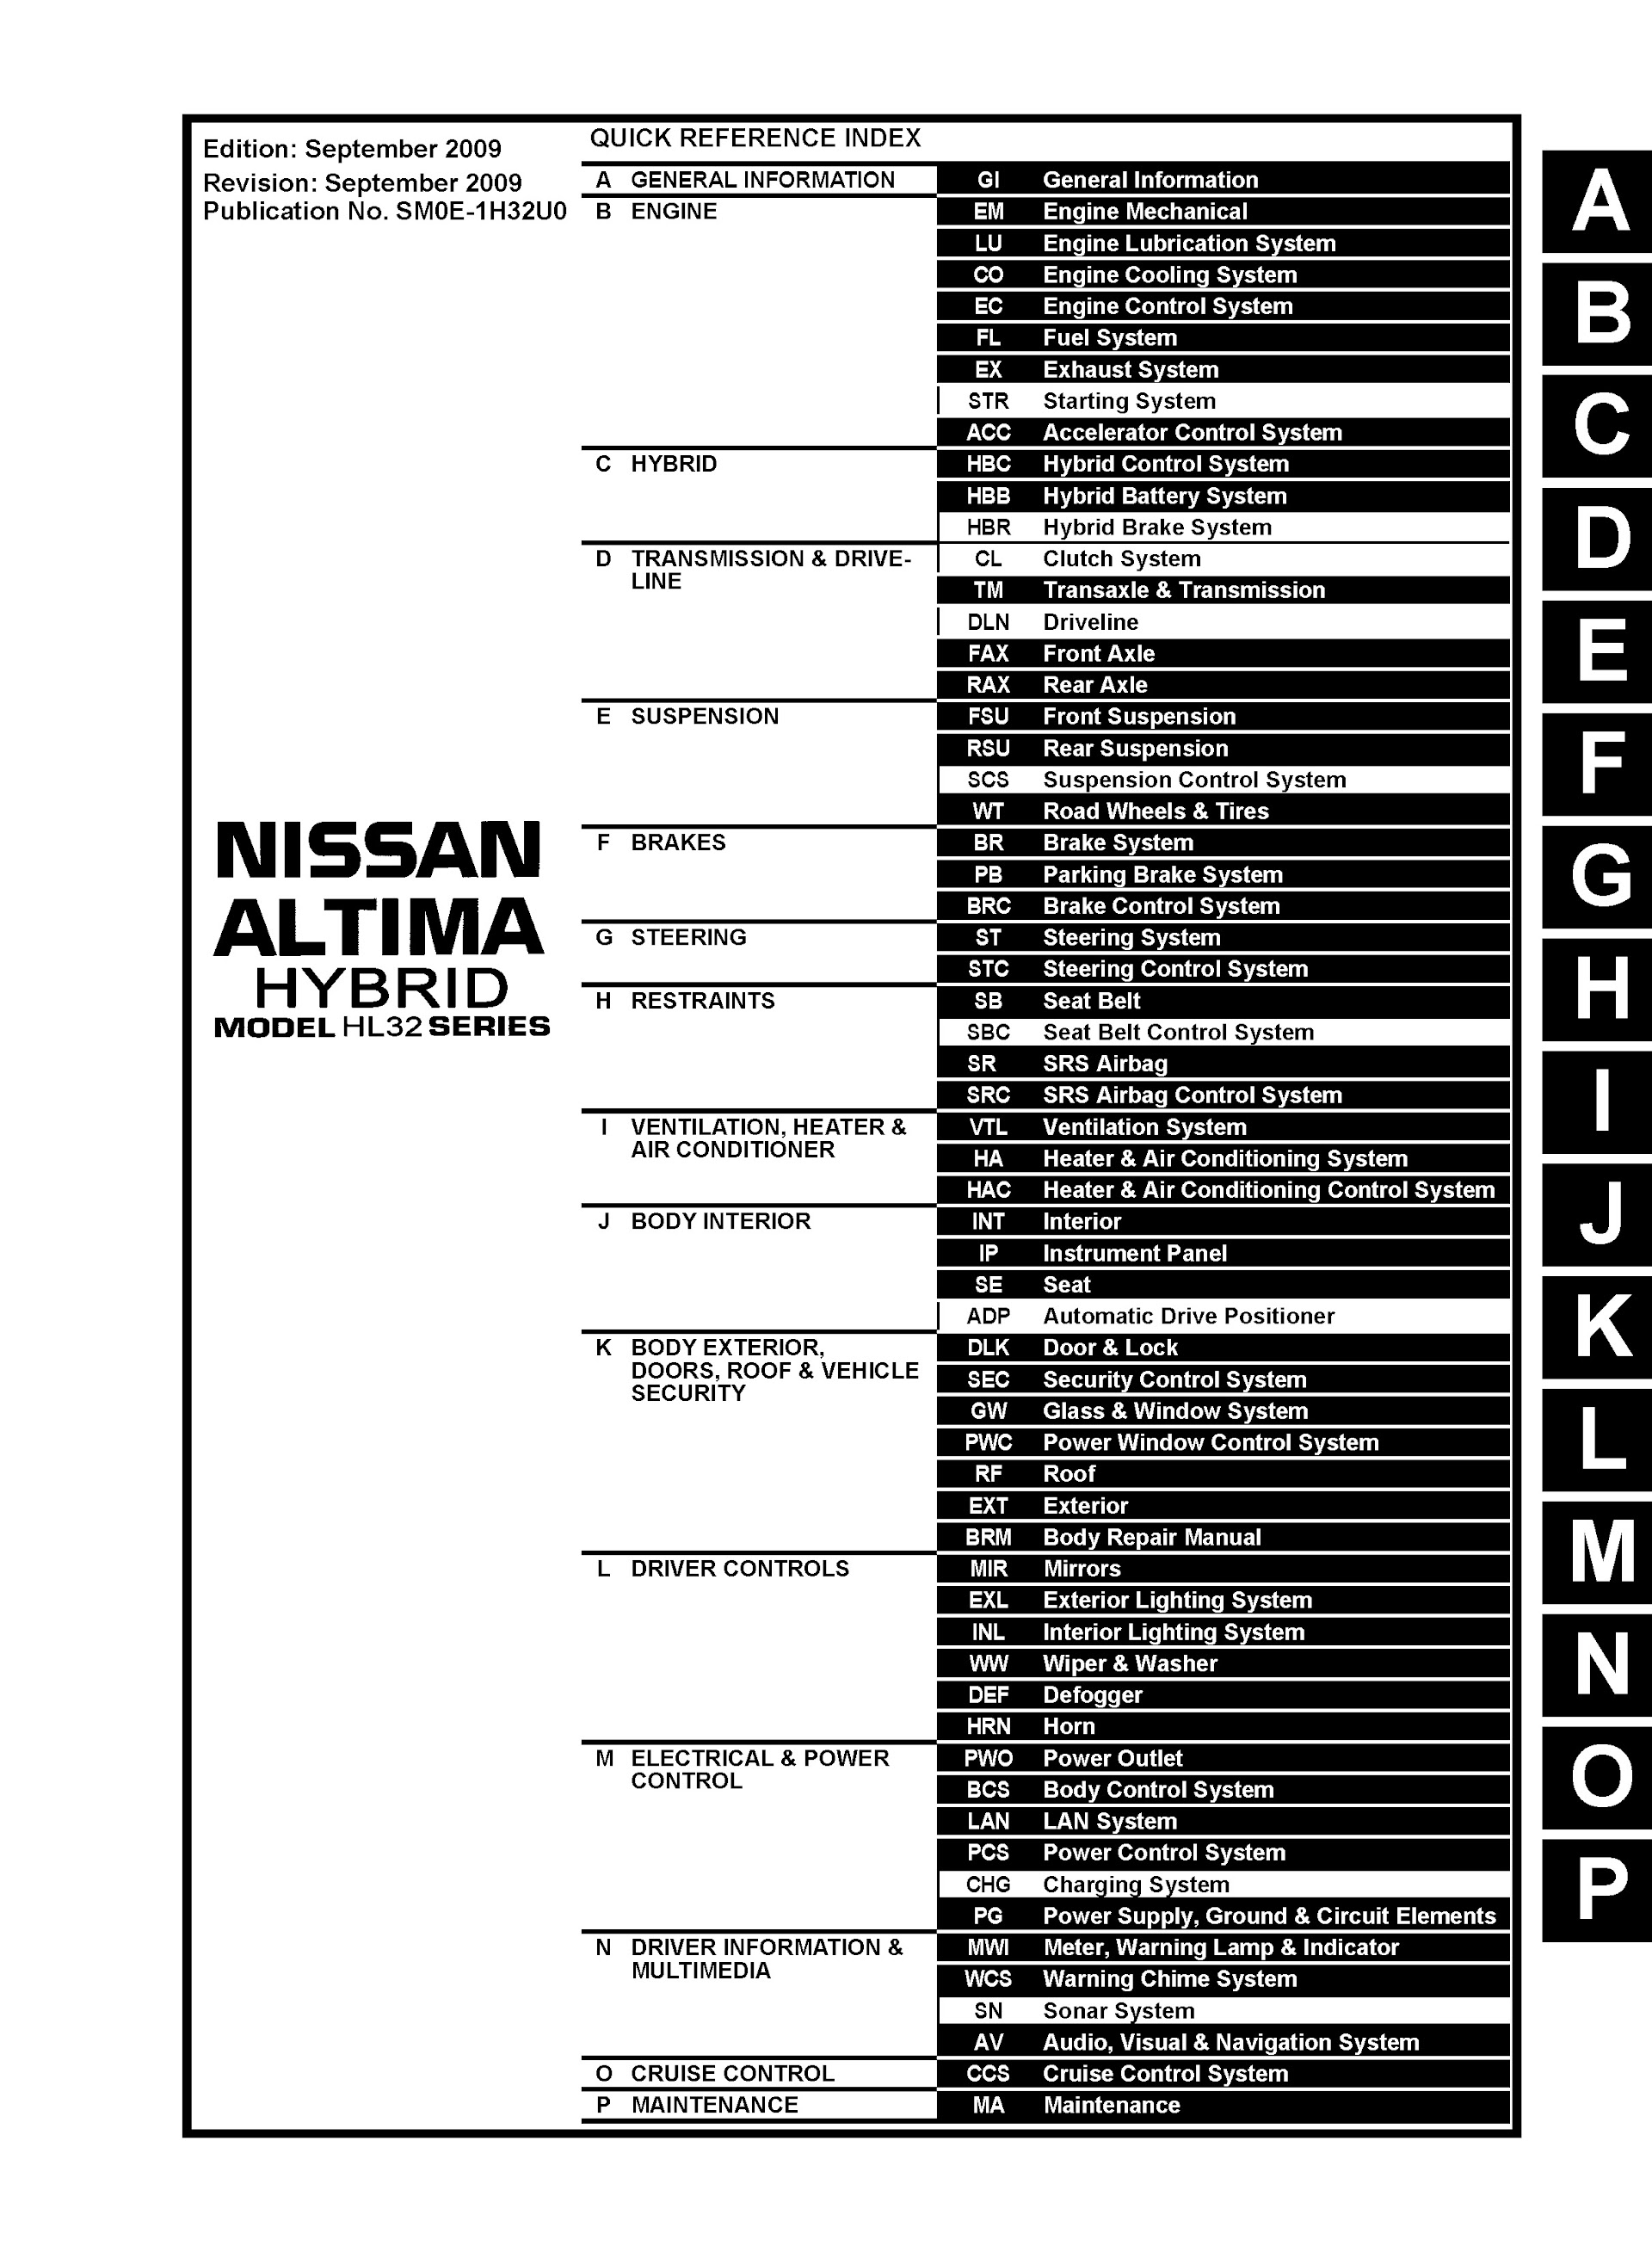 2010 Nissan Altima Hybrid Repair Manual